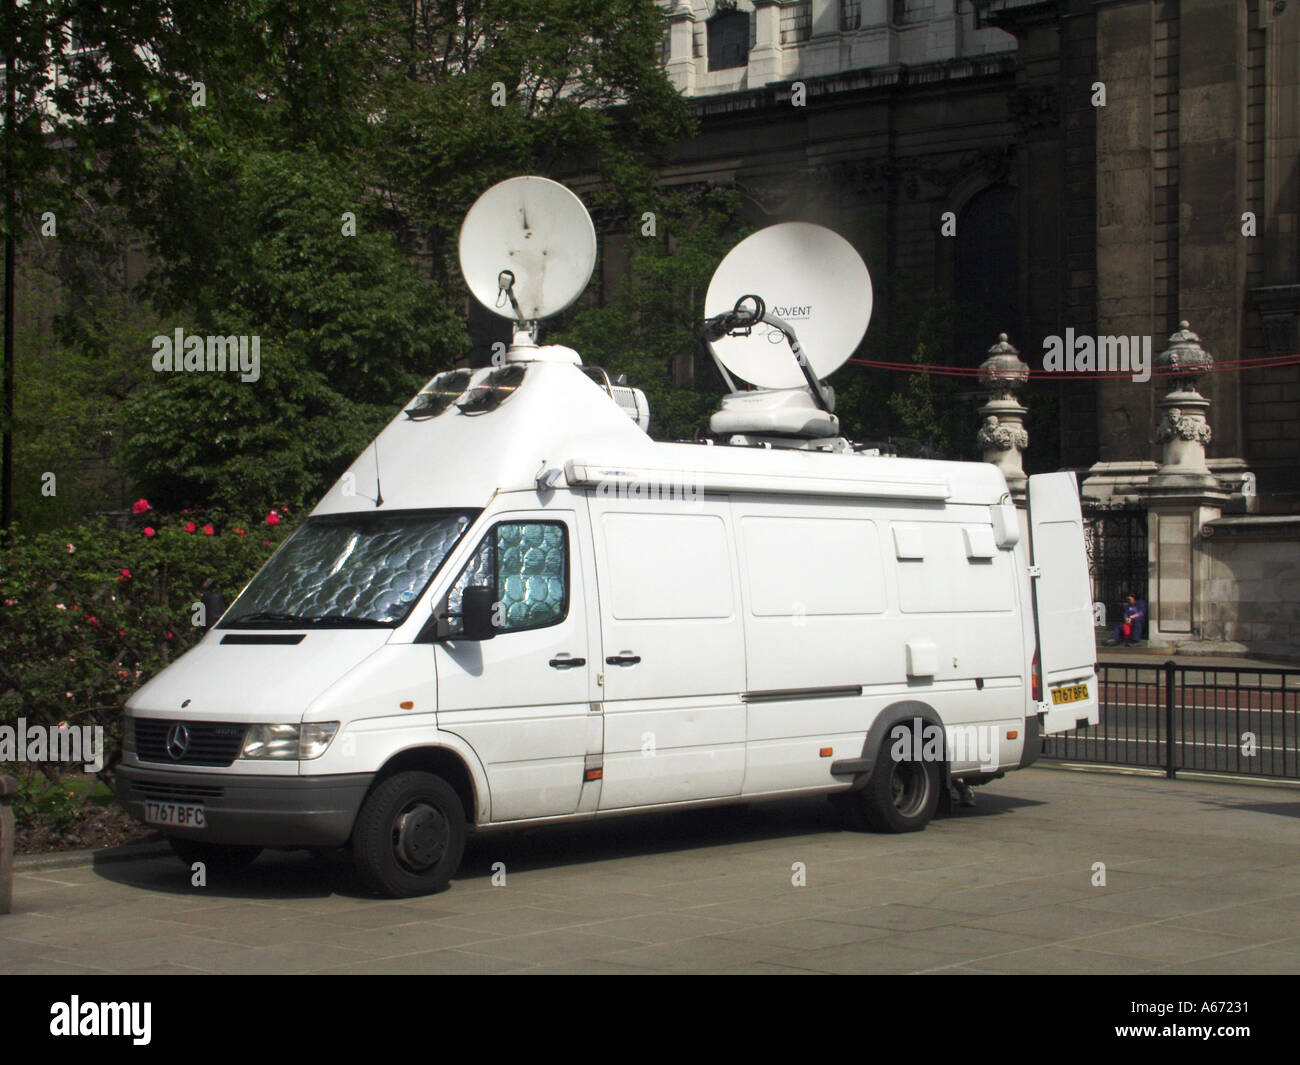 Antenne satellitari sul tetto di un furgone bianco Mercedes per comunicazioni parcheggiato vicino alla Royal Courts of Justice nello Strand City di Londra, Inghilterra, Regno Unito Foto Stock